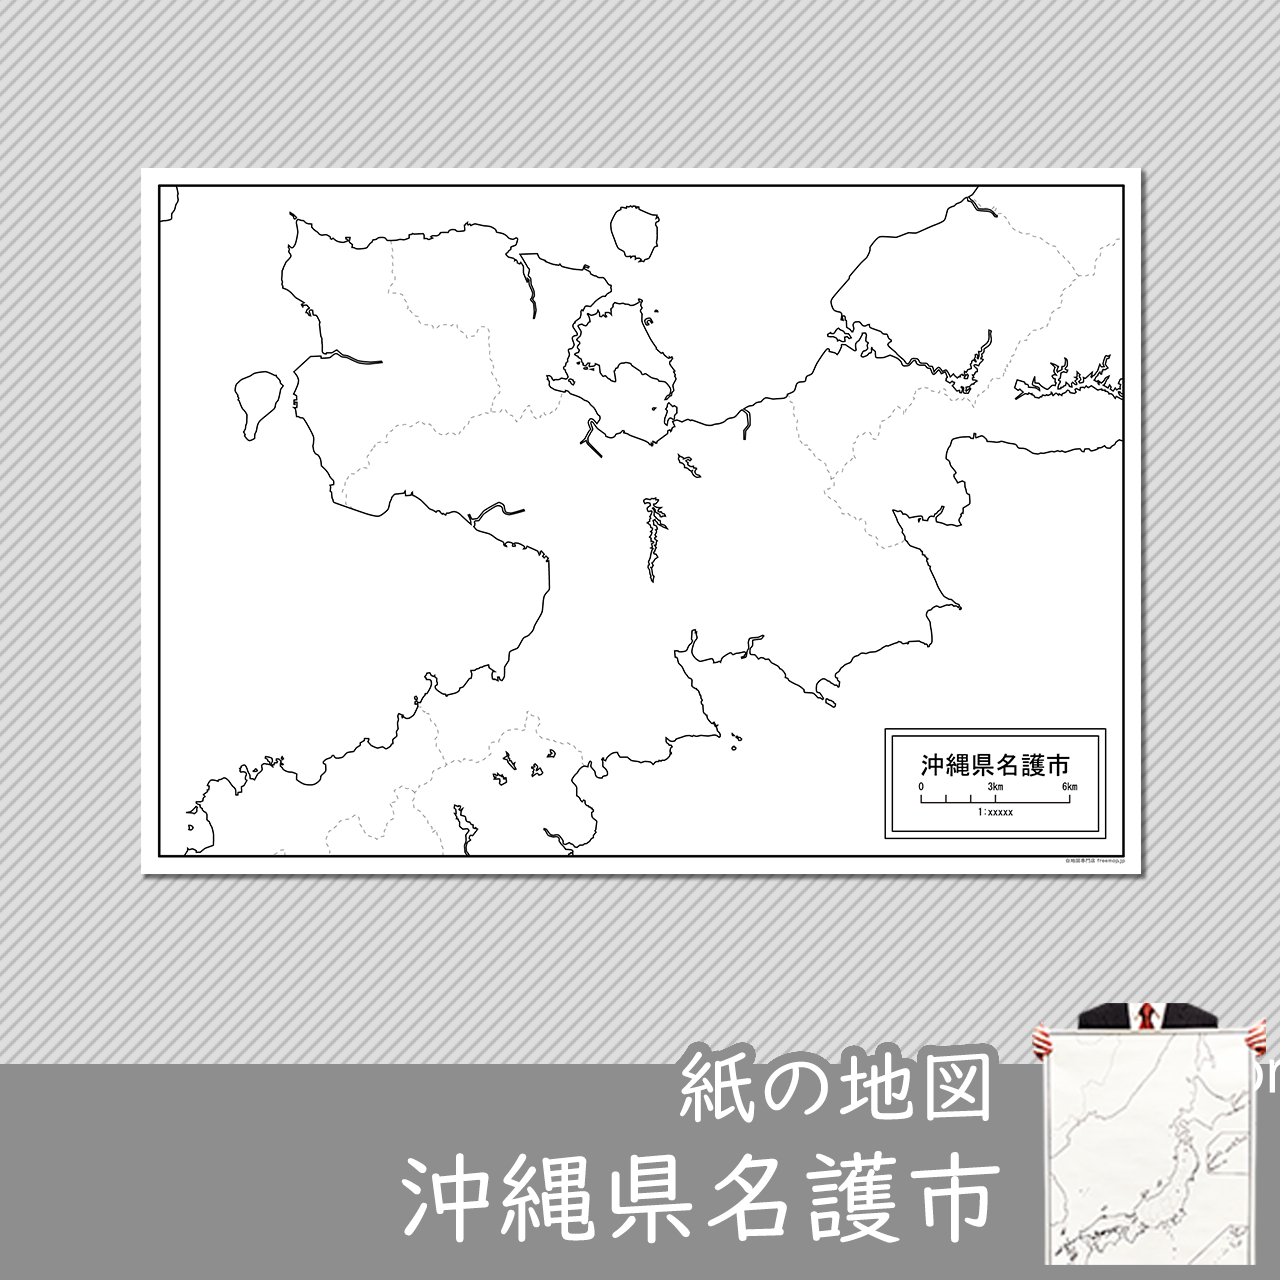 名護市の紙の白地図のサムネイル